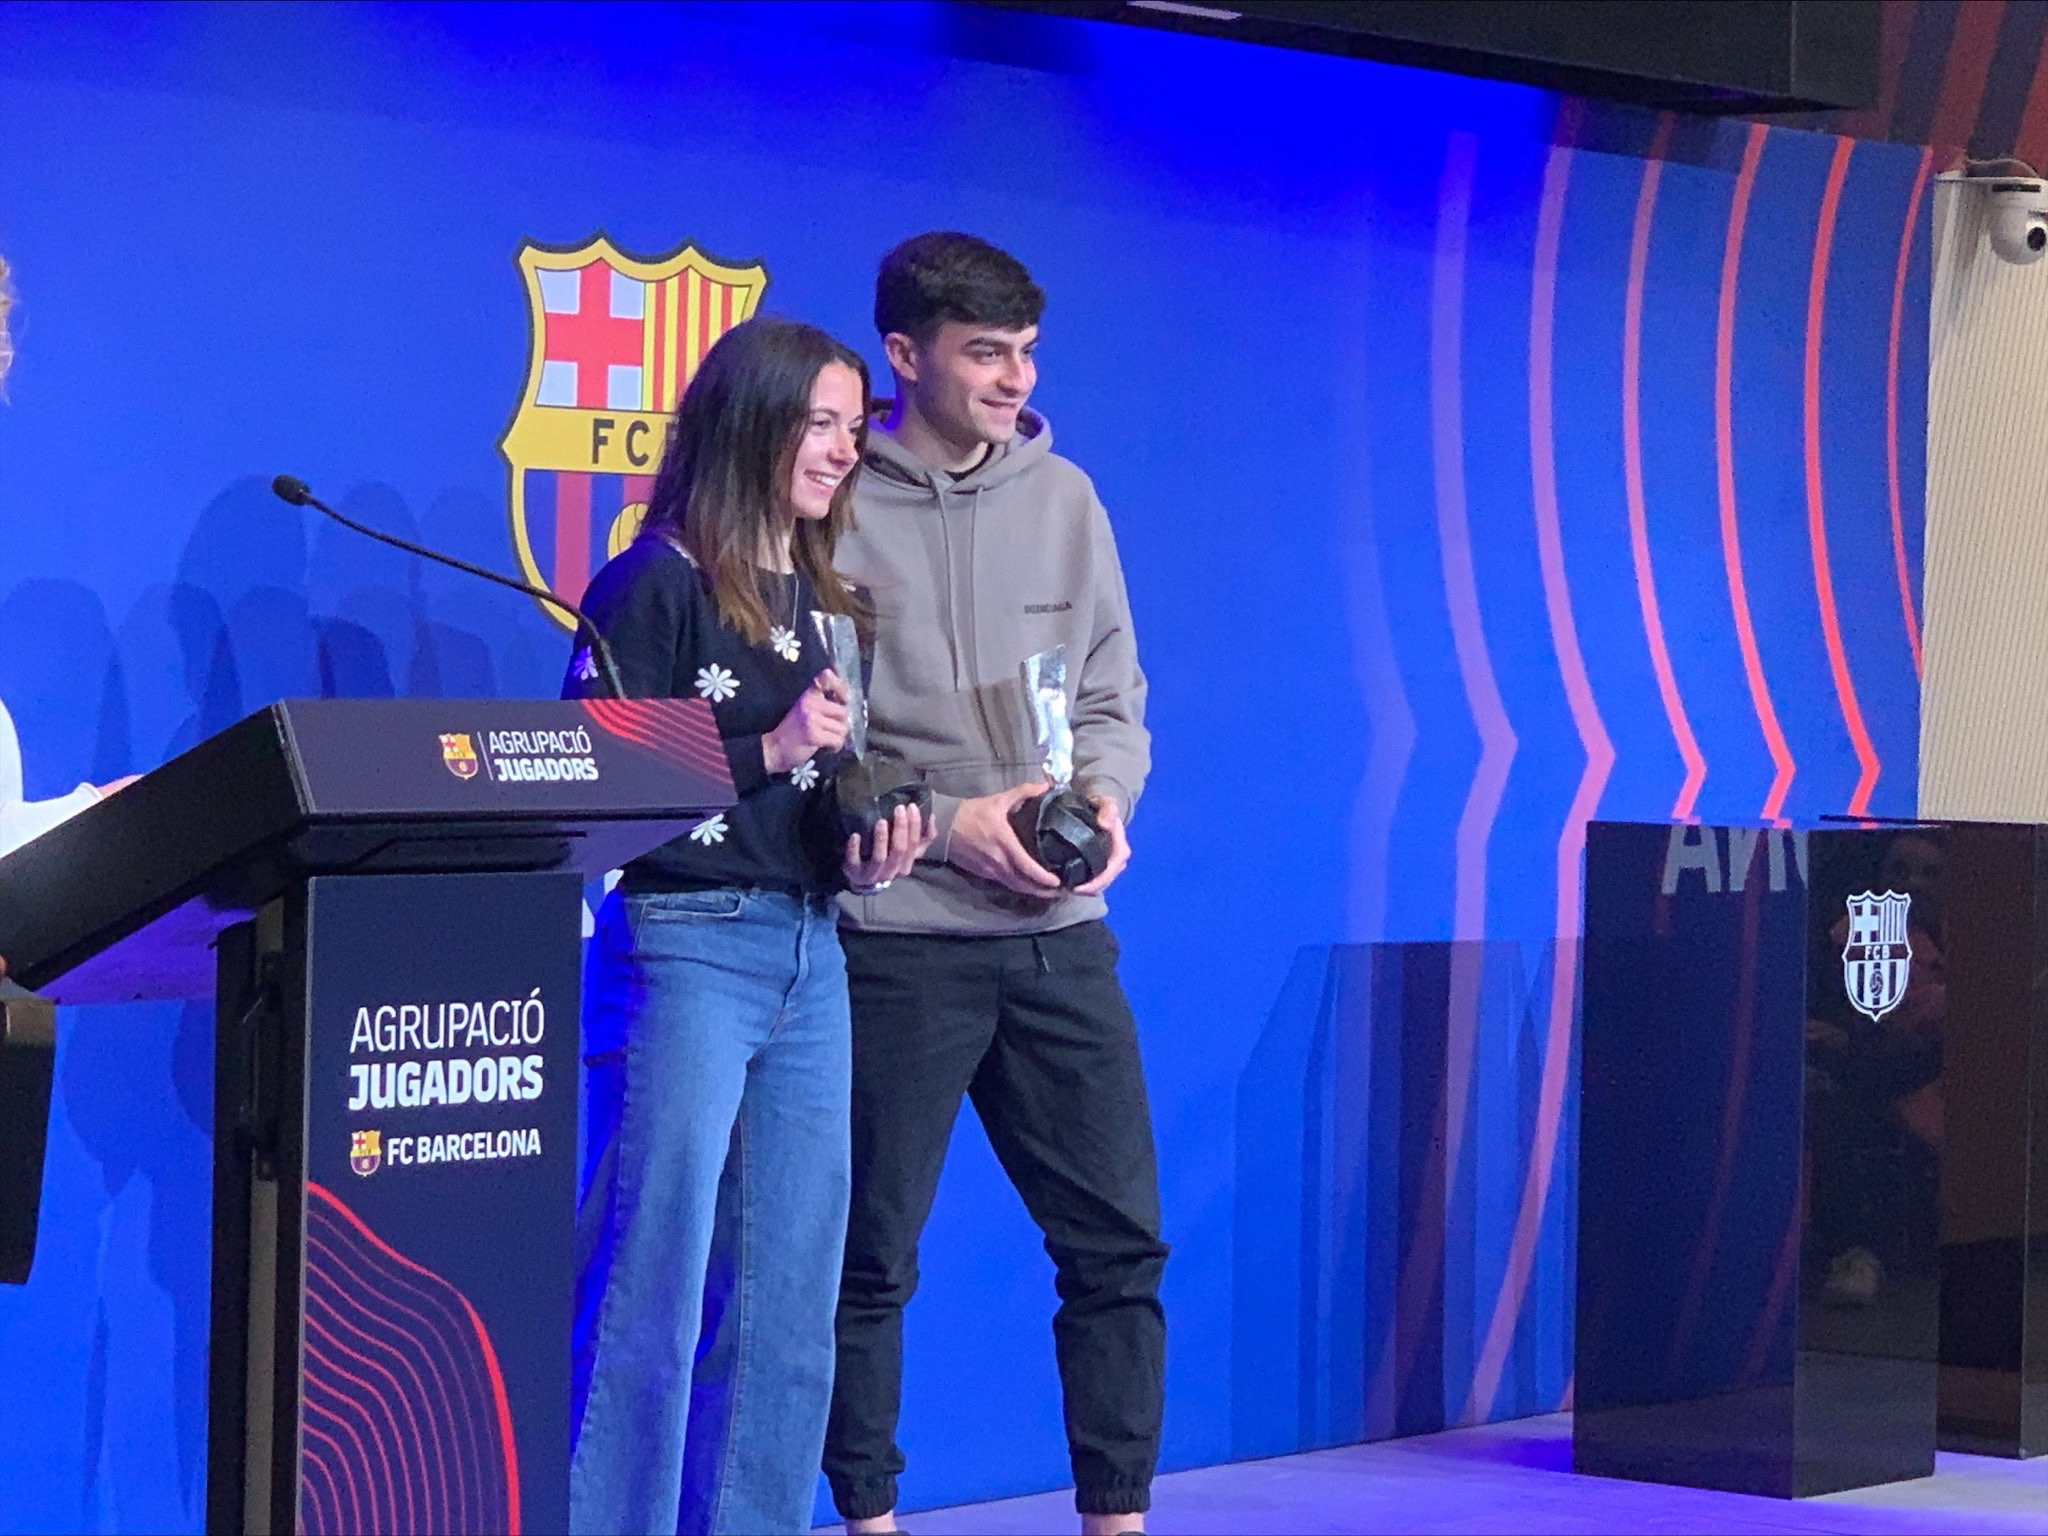 Aitana Bonmatí y Pedri González reciben los premios Barça Jugadors 2022 al juego limpio / CULEMANIA